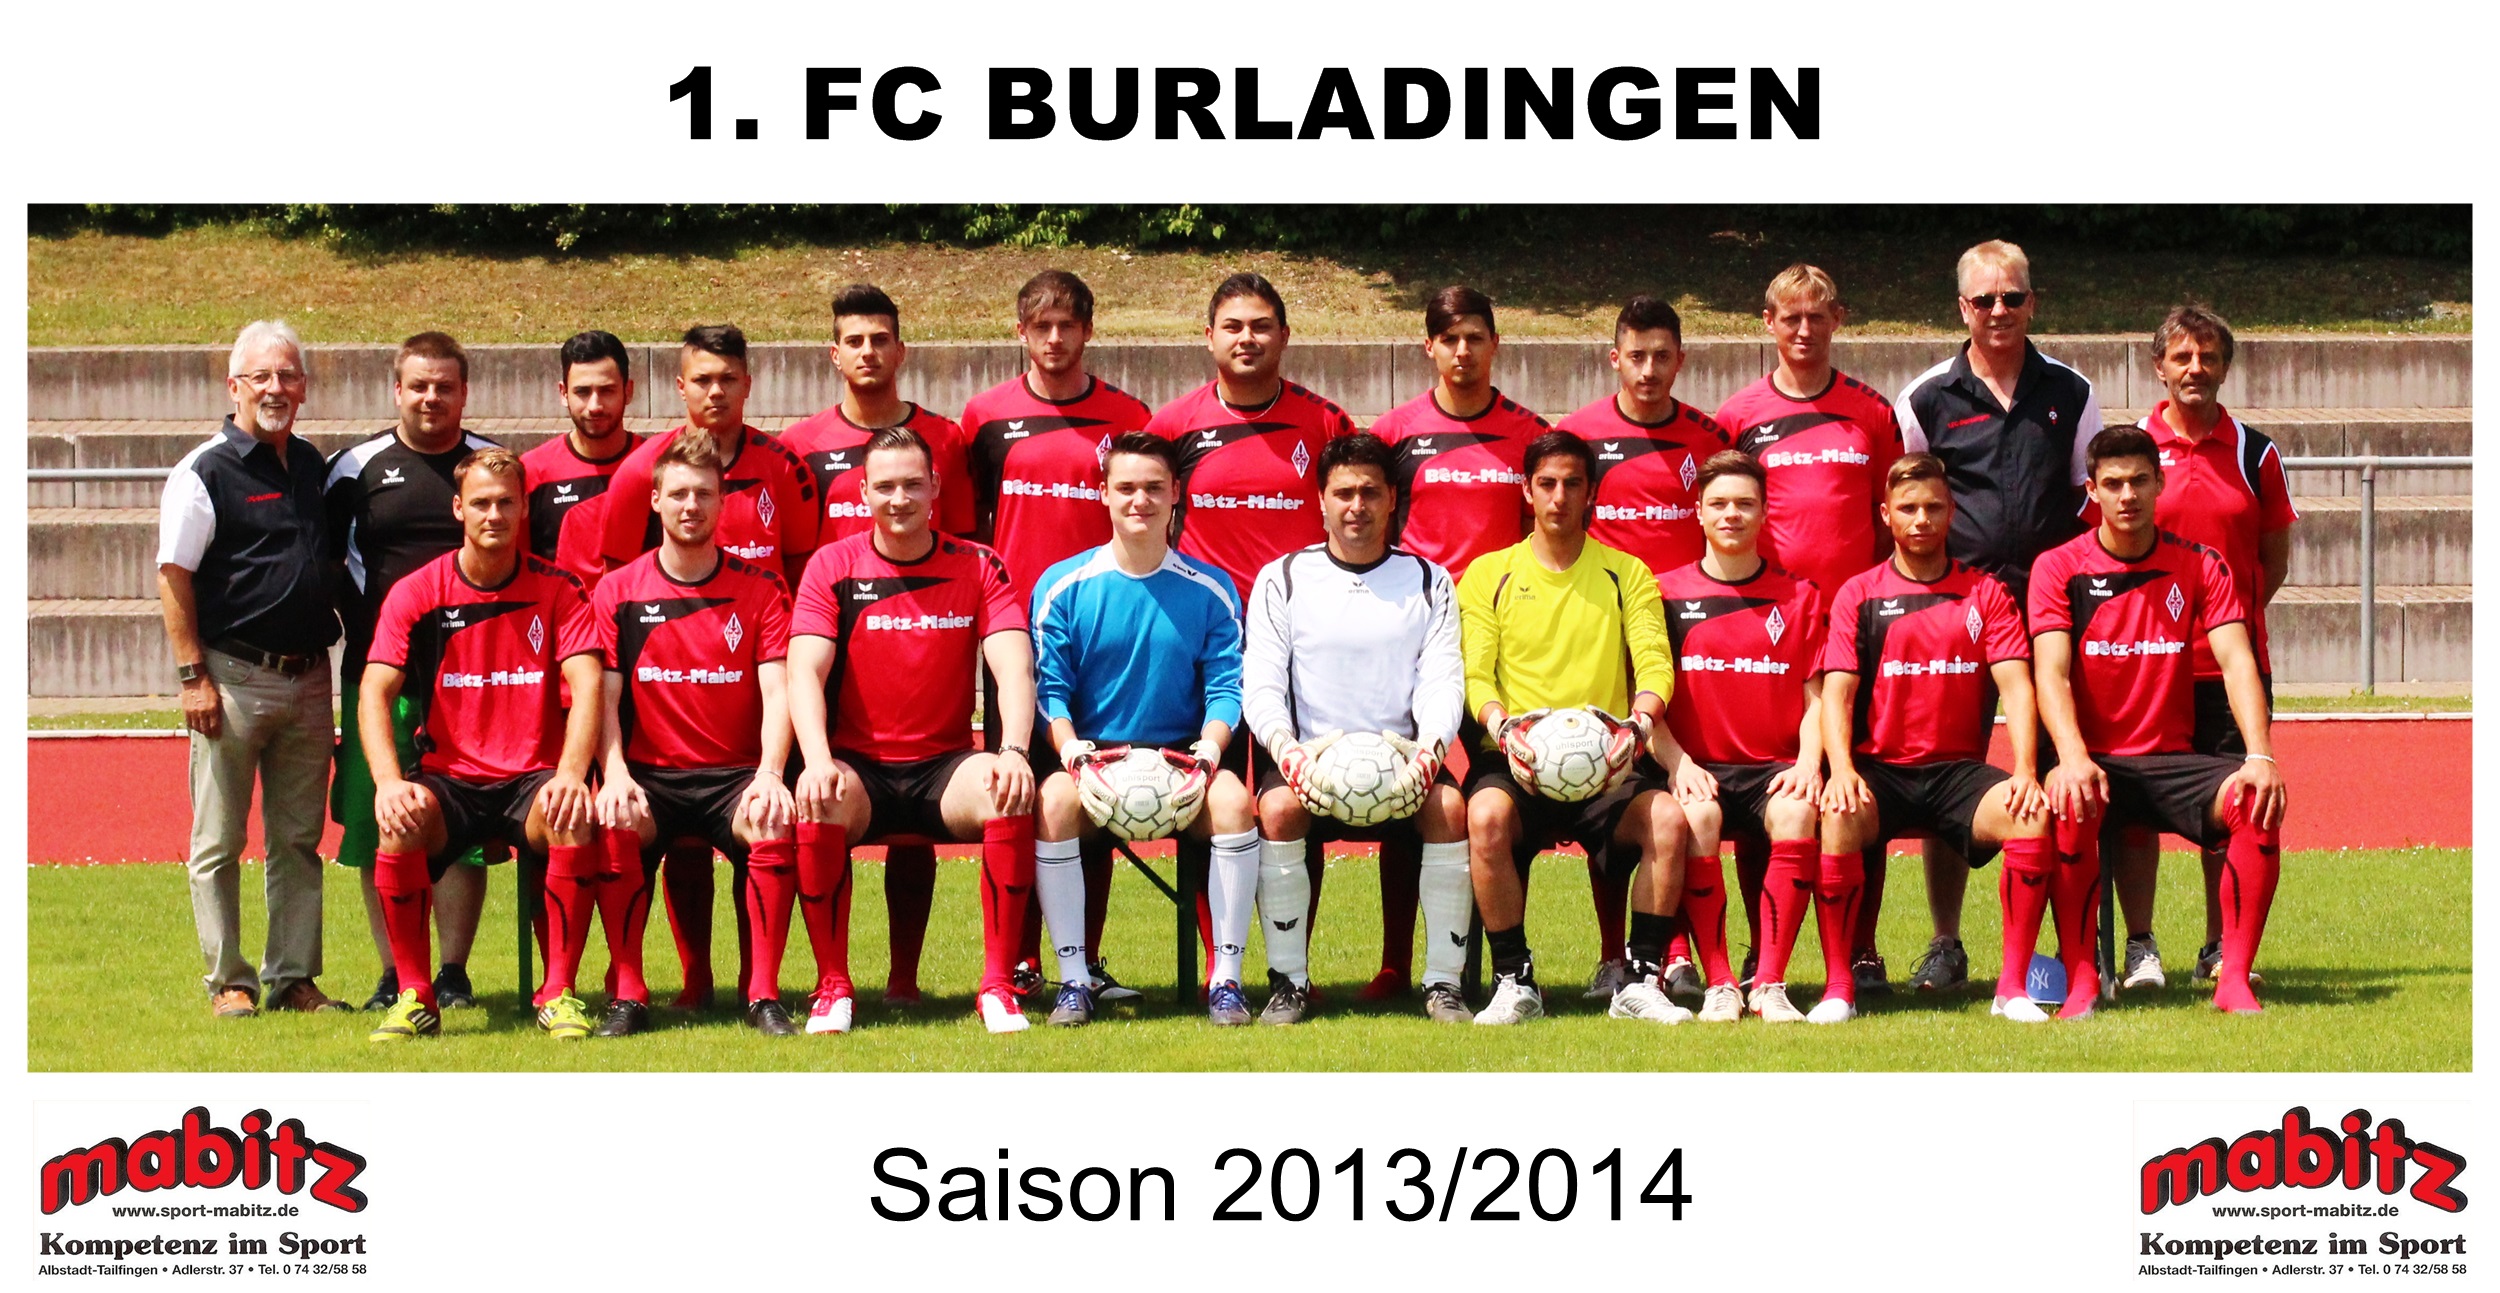 Mannschaftsfoto/Teamfoto von 1. FC Burladingen